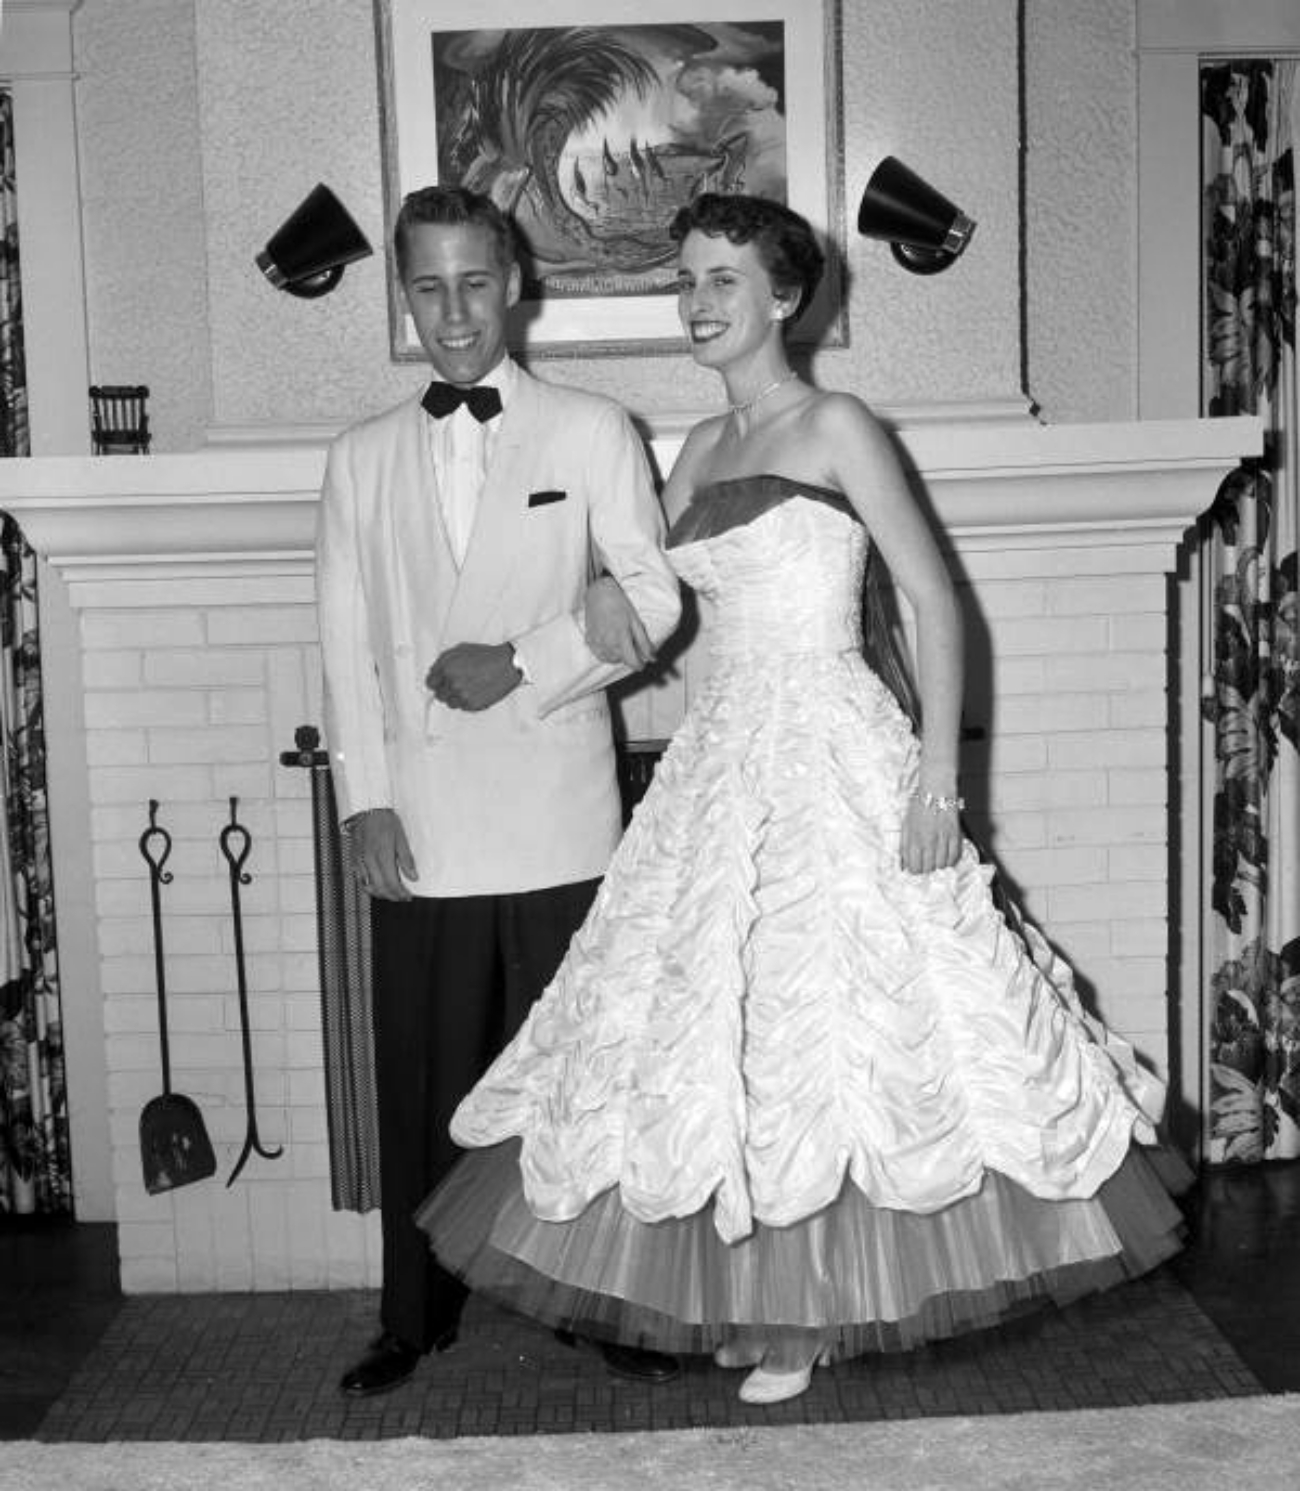 1954 teens dressed for cotillion